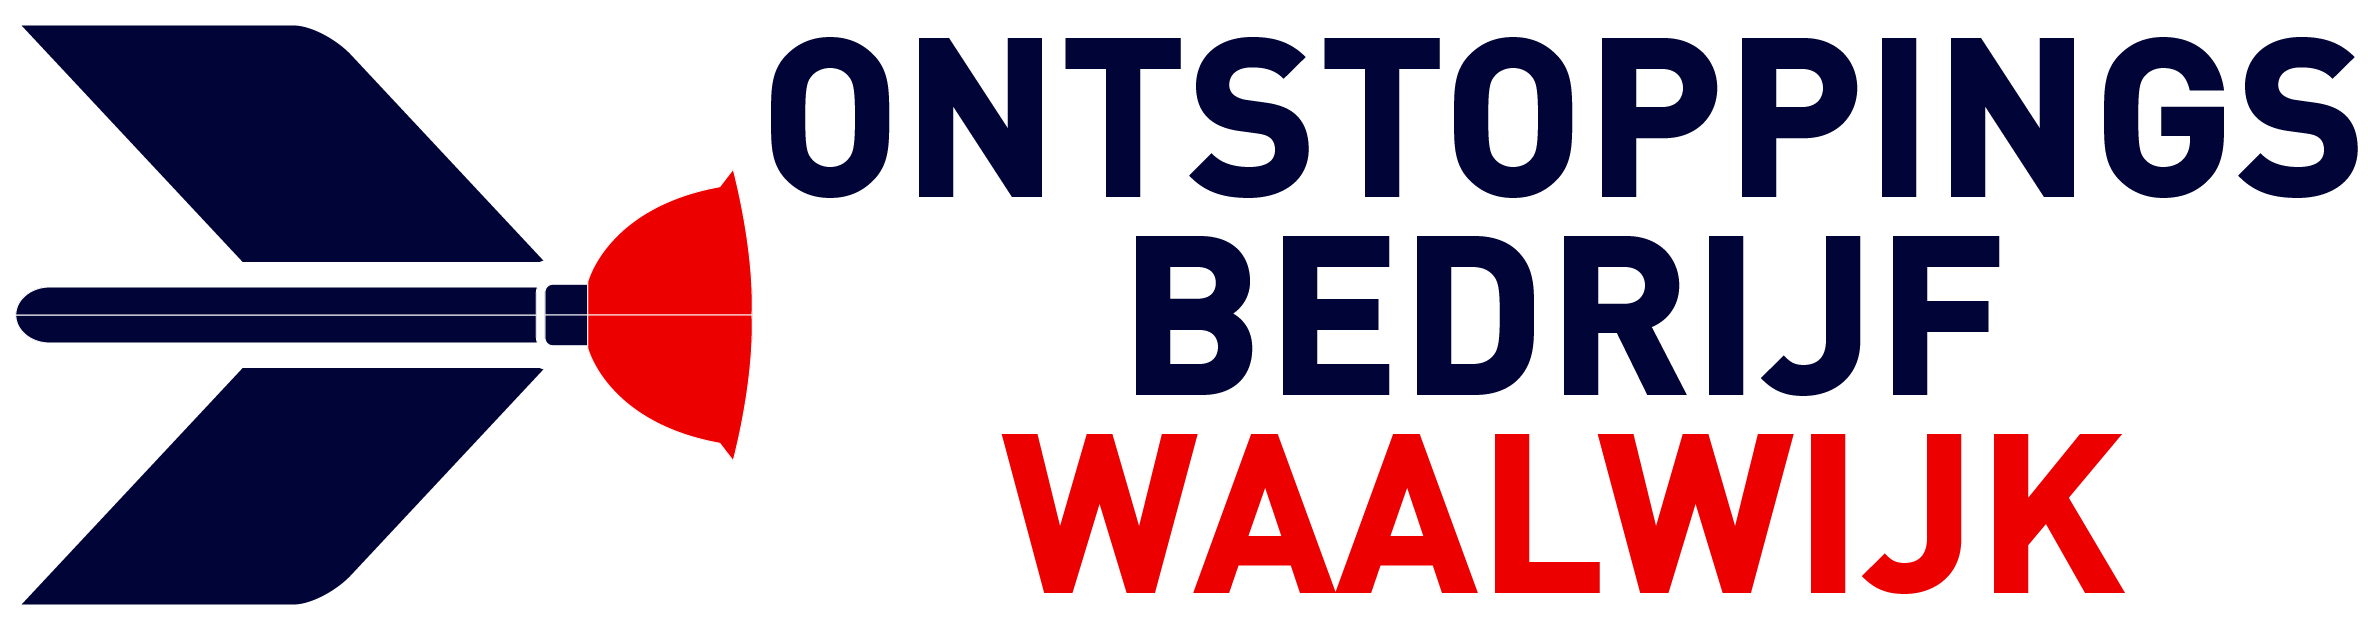 Ontstoppingsbedrijf Waalwijk logo